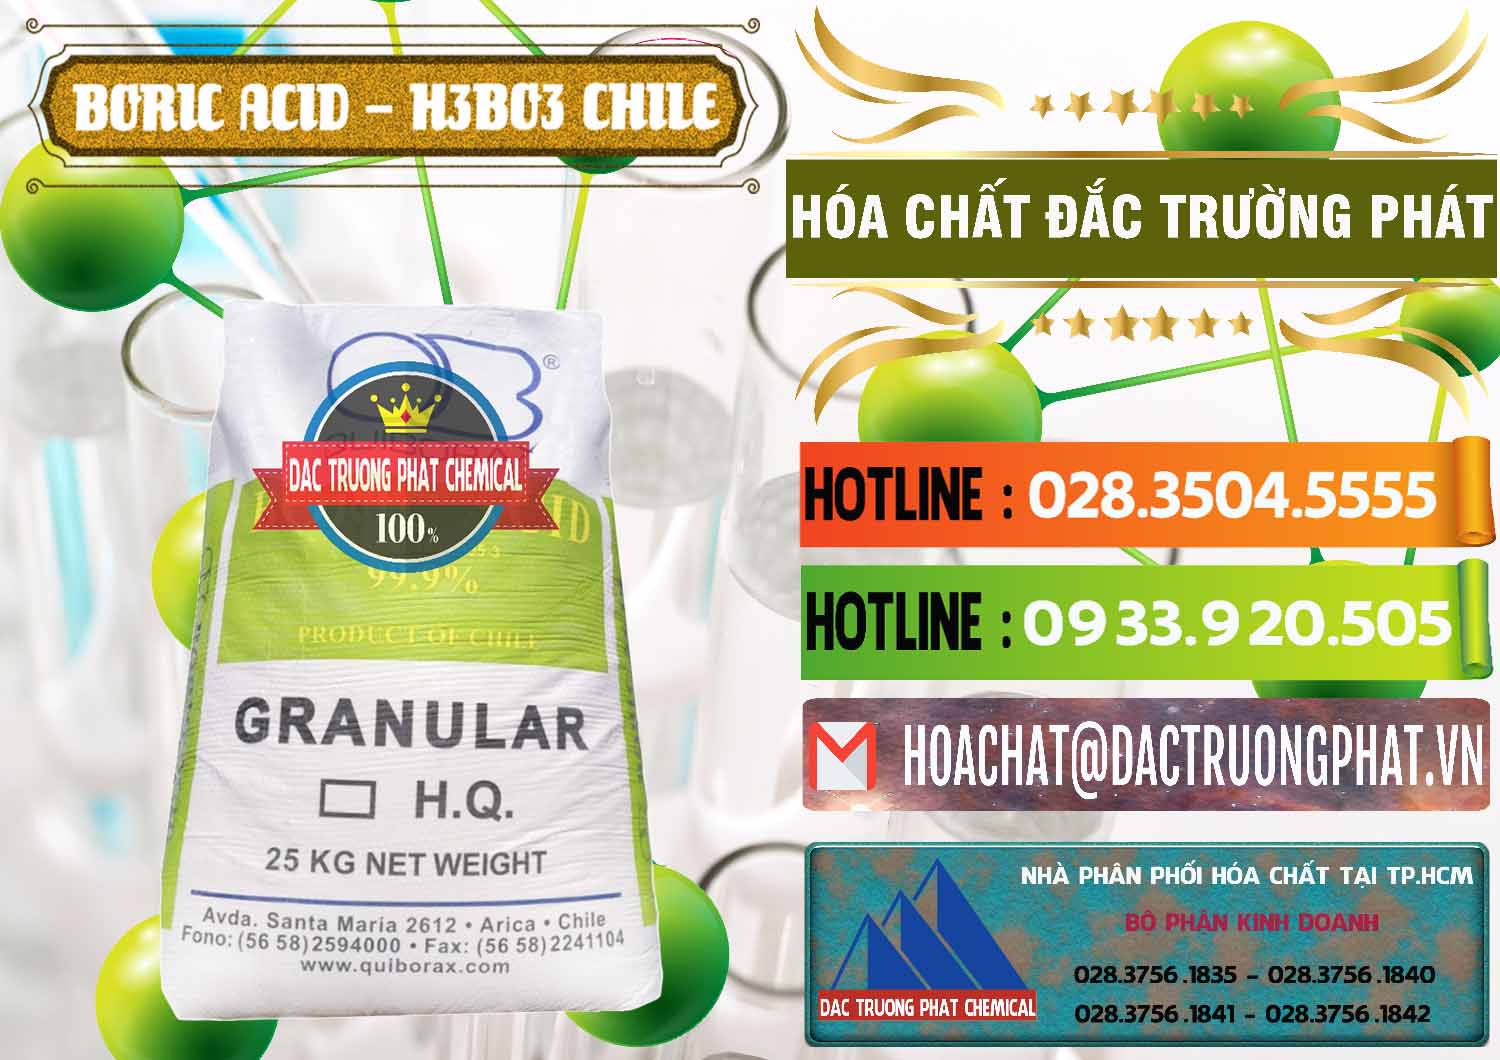 Đơn vị chuyên bán ( cung ứng ) Acid Boric – Axit Boric H3BO3 99% Quiborax Chile - 0281 - Công ty phân phối - cung ứng hóa chất tại TP.HCM - cungcaphoachat.com.vn